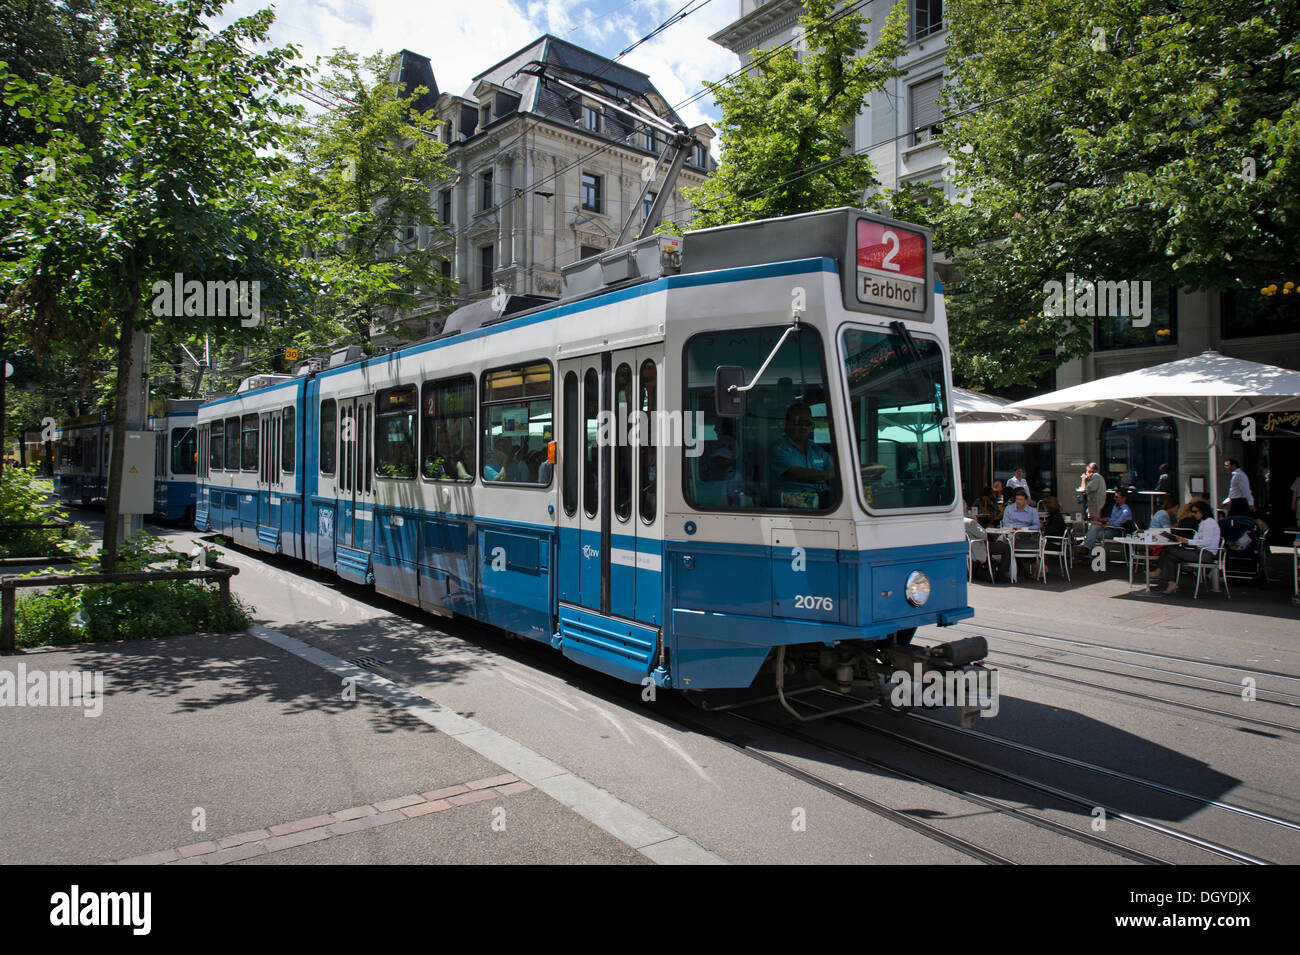 Tram, old town, Zurich, Switzerland, Europe Stock Photo